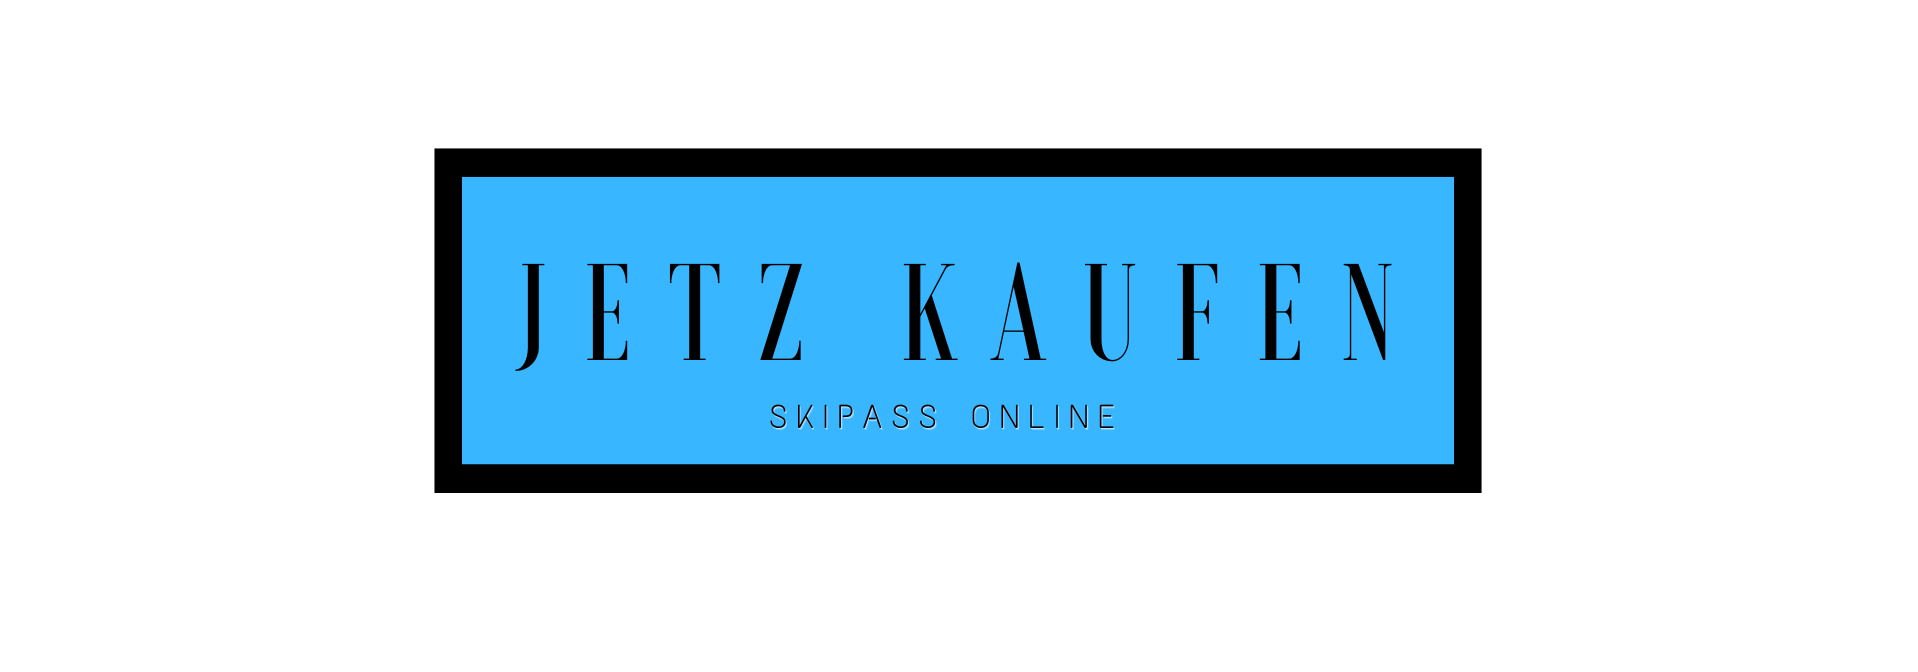 Domaine Nordique La Bresse Lispach - jetzt kaufen Skipass Online